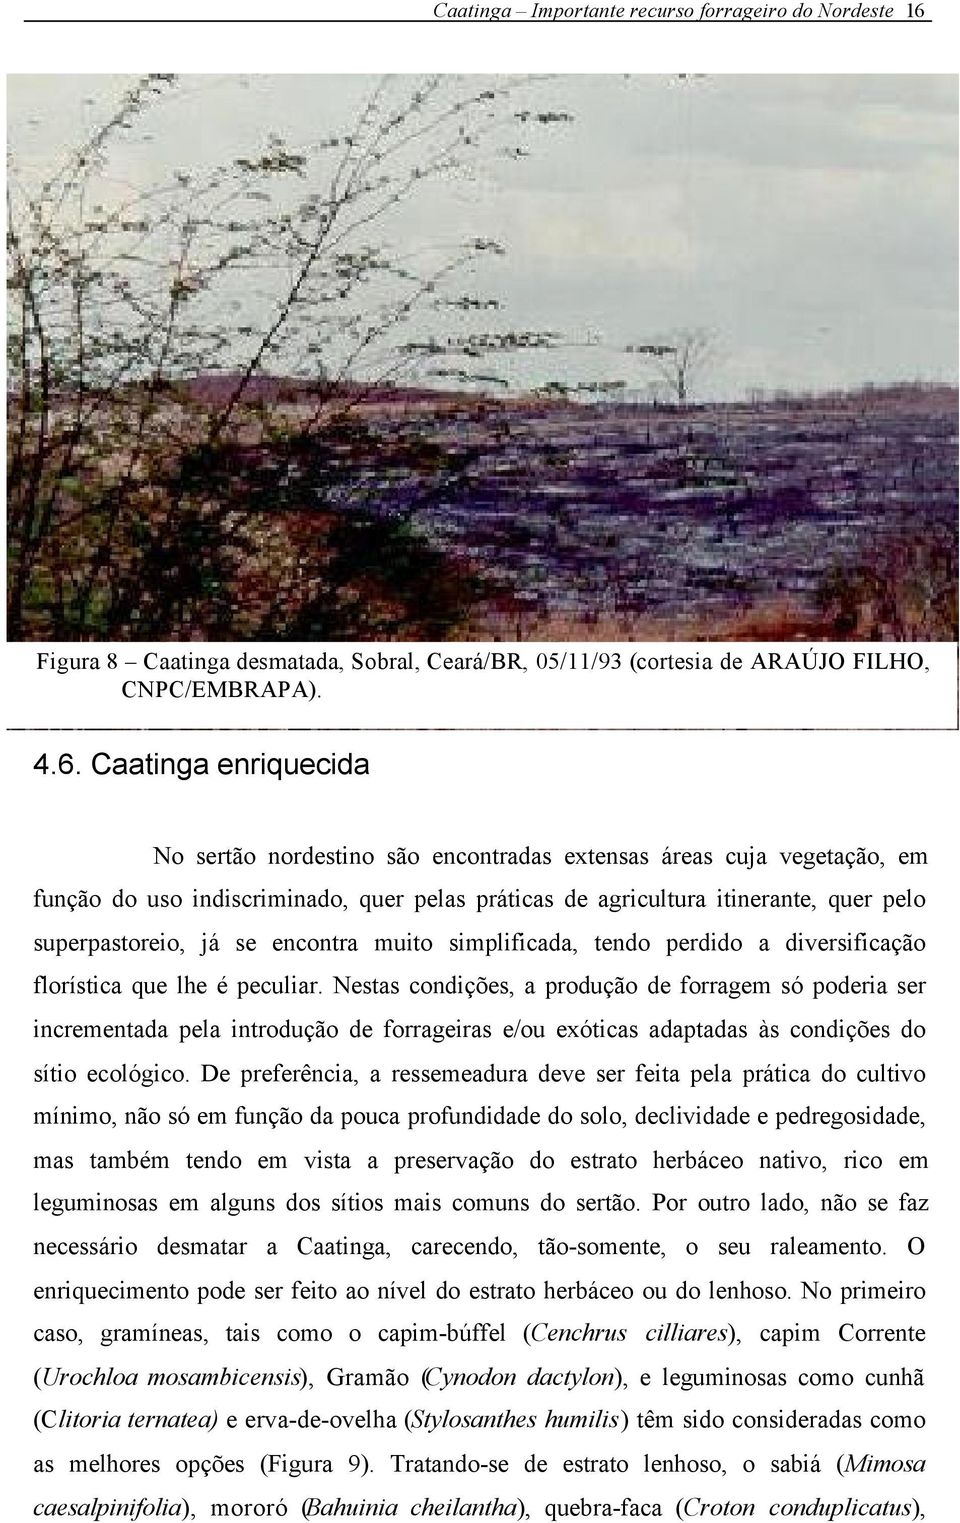 Caatinga enriquecida No sertão nordestino são encontradas extensas áreas cuja vegetação, em função do uso indiscriminado, quer pelas práticas de agricultura itinerante, quer pelo superpastoreio, já